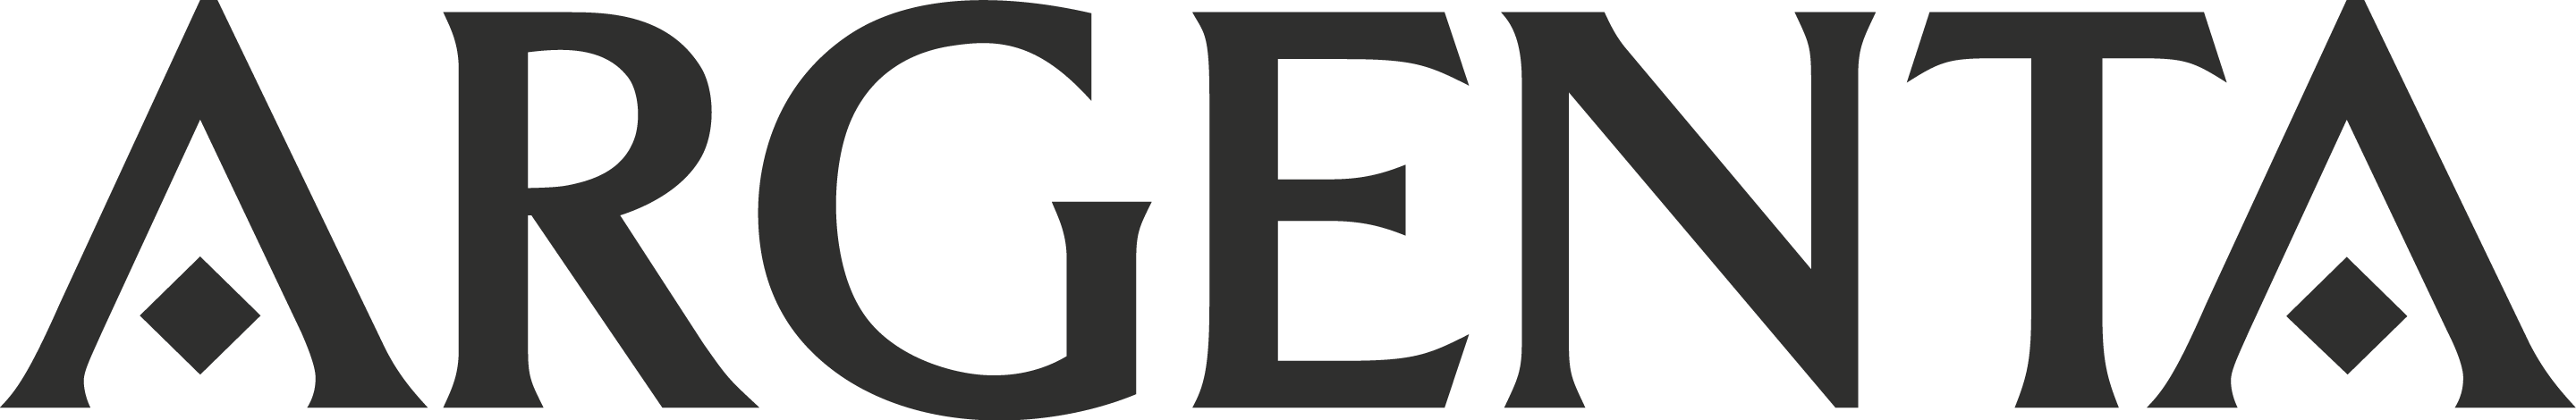 Logotipo-Argenta-W